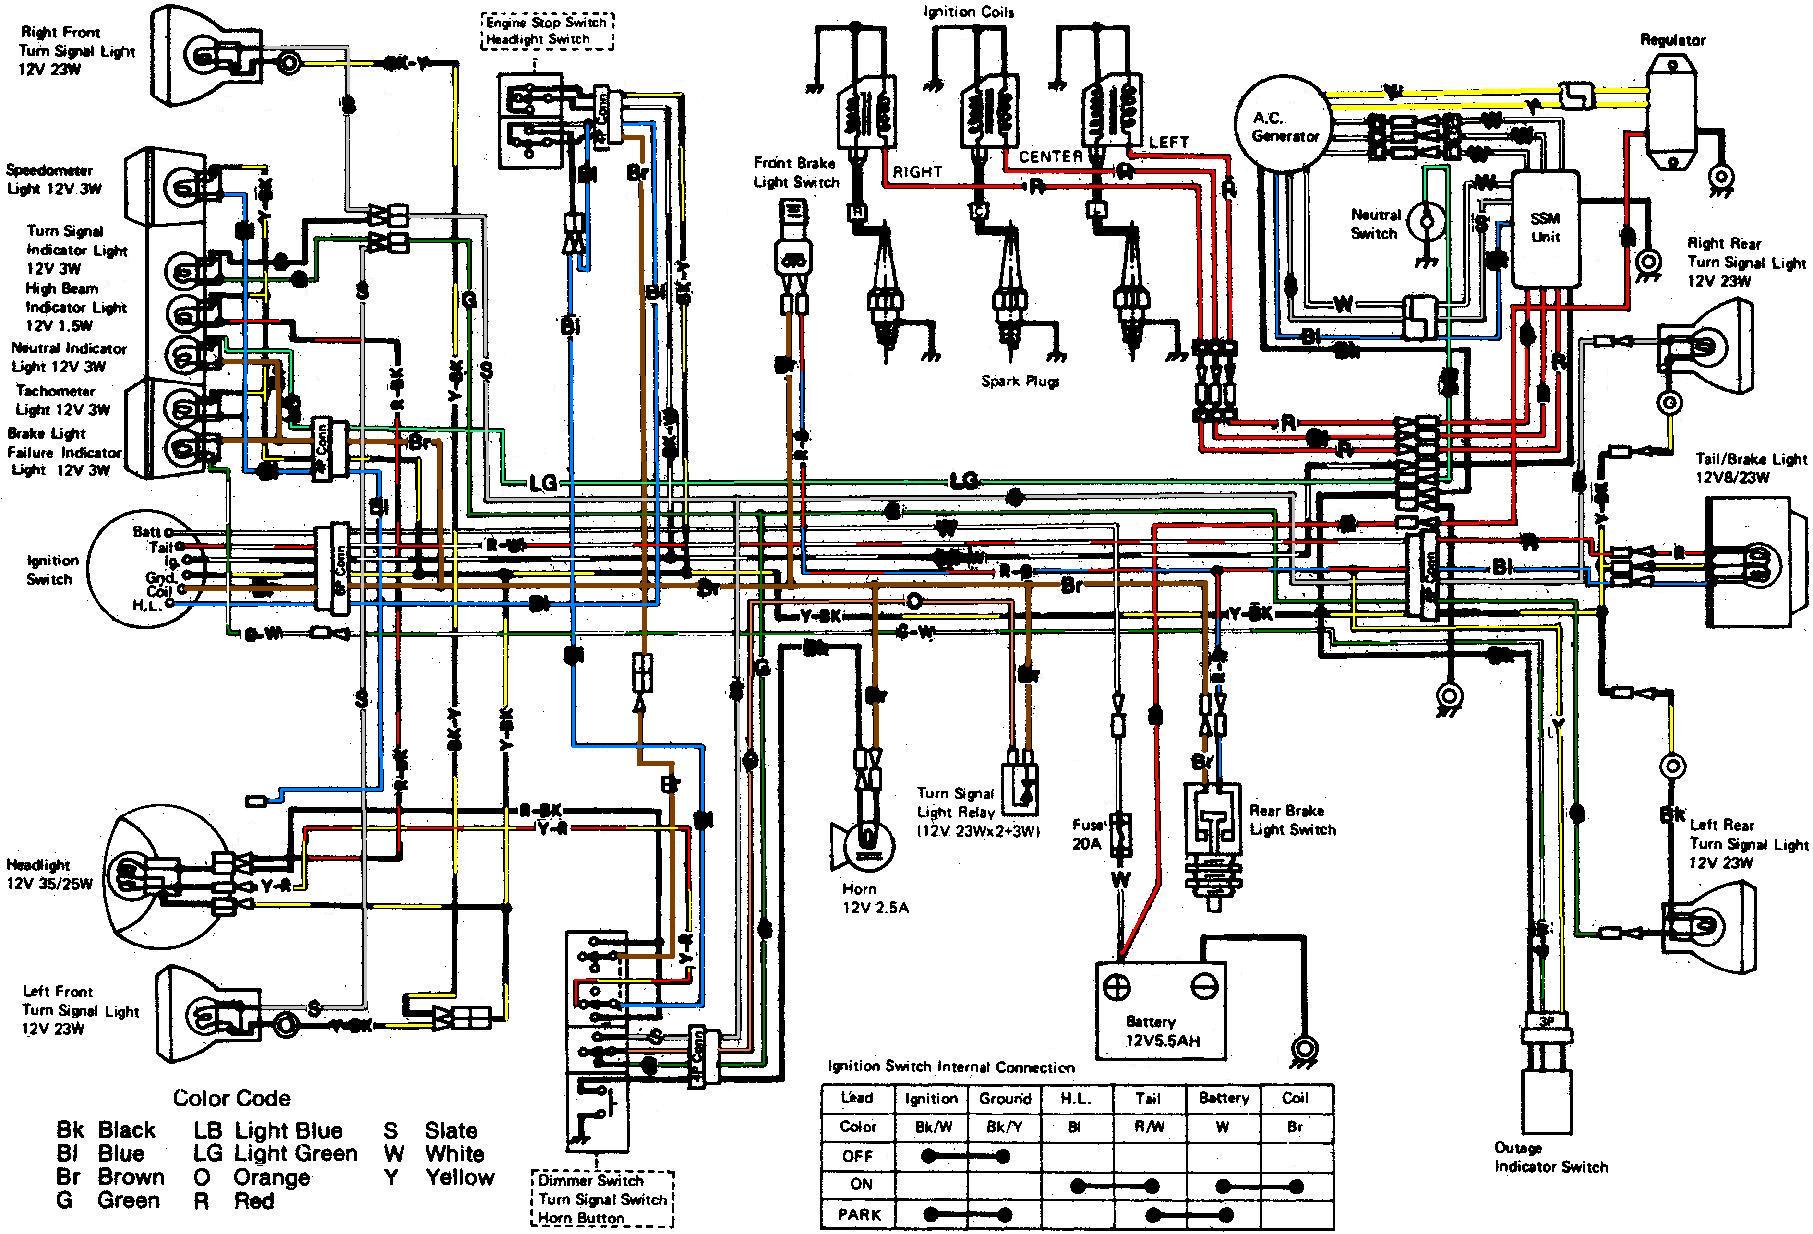 Wiring Diagrams, Kawasaki Bayou 300 Ignition Wiring Diagram